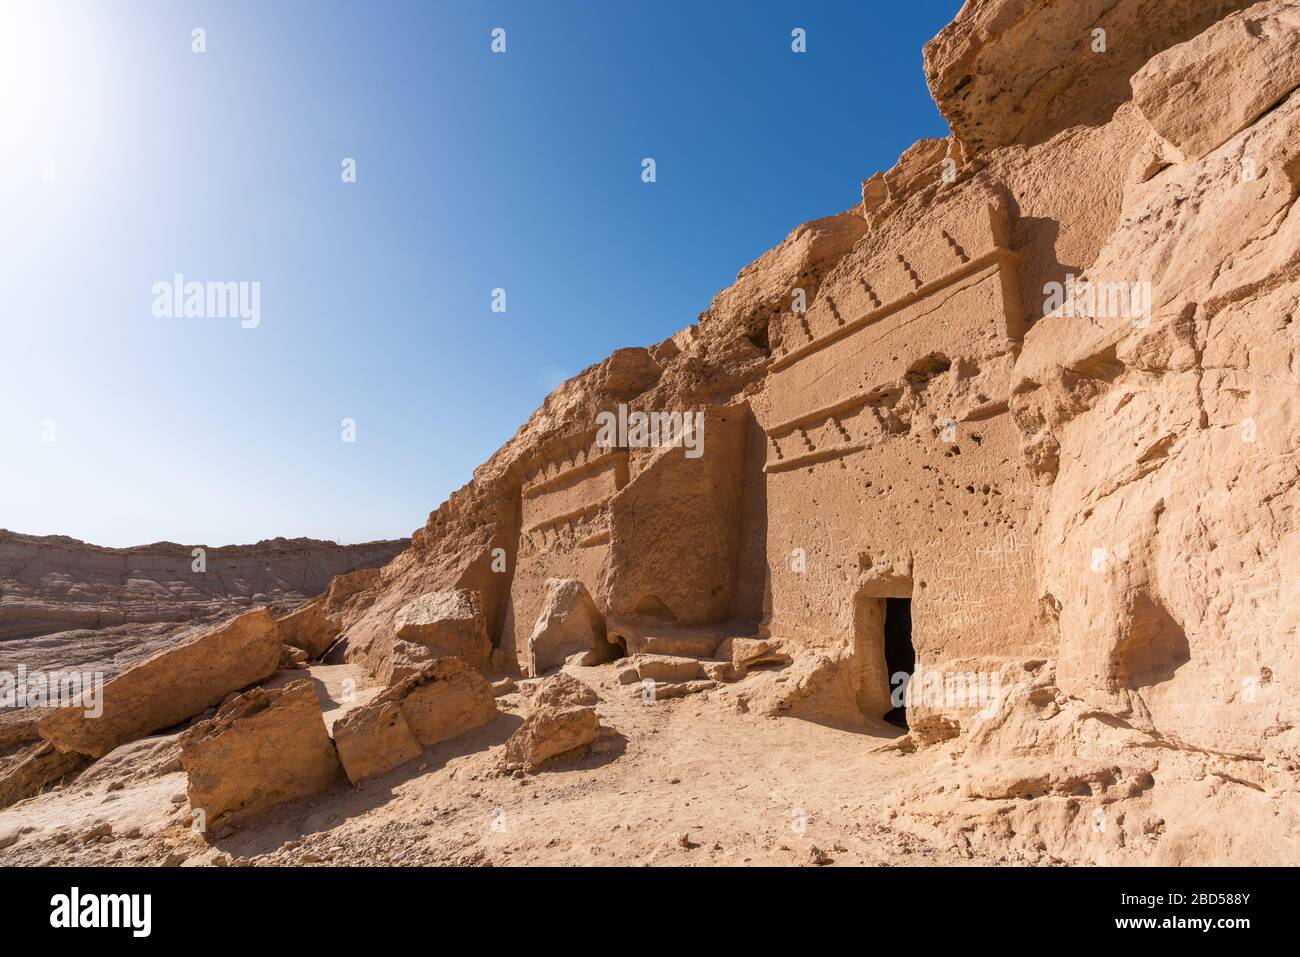 Tombe storiche nabatee ad al Bad', Arabia Saudita Foto Stock